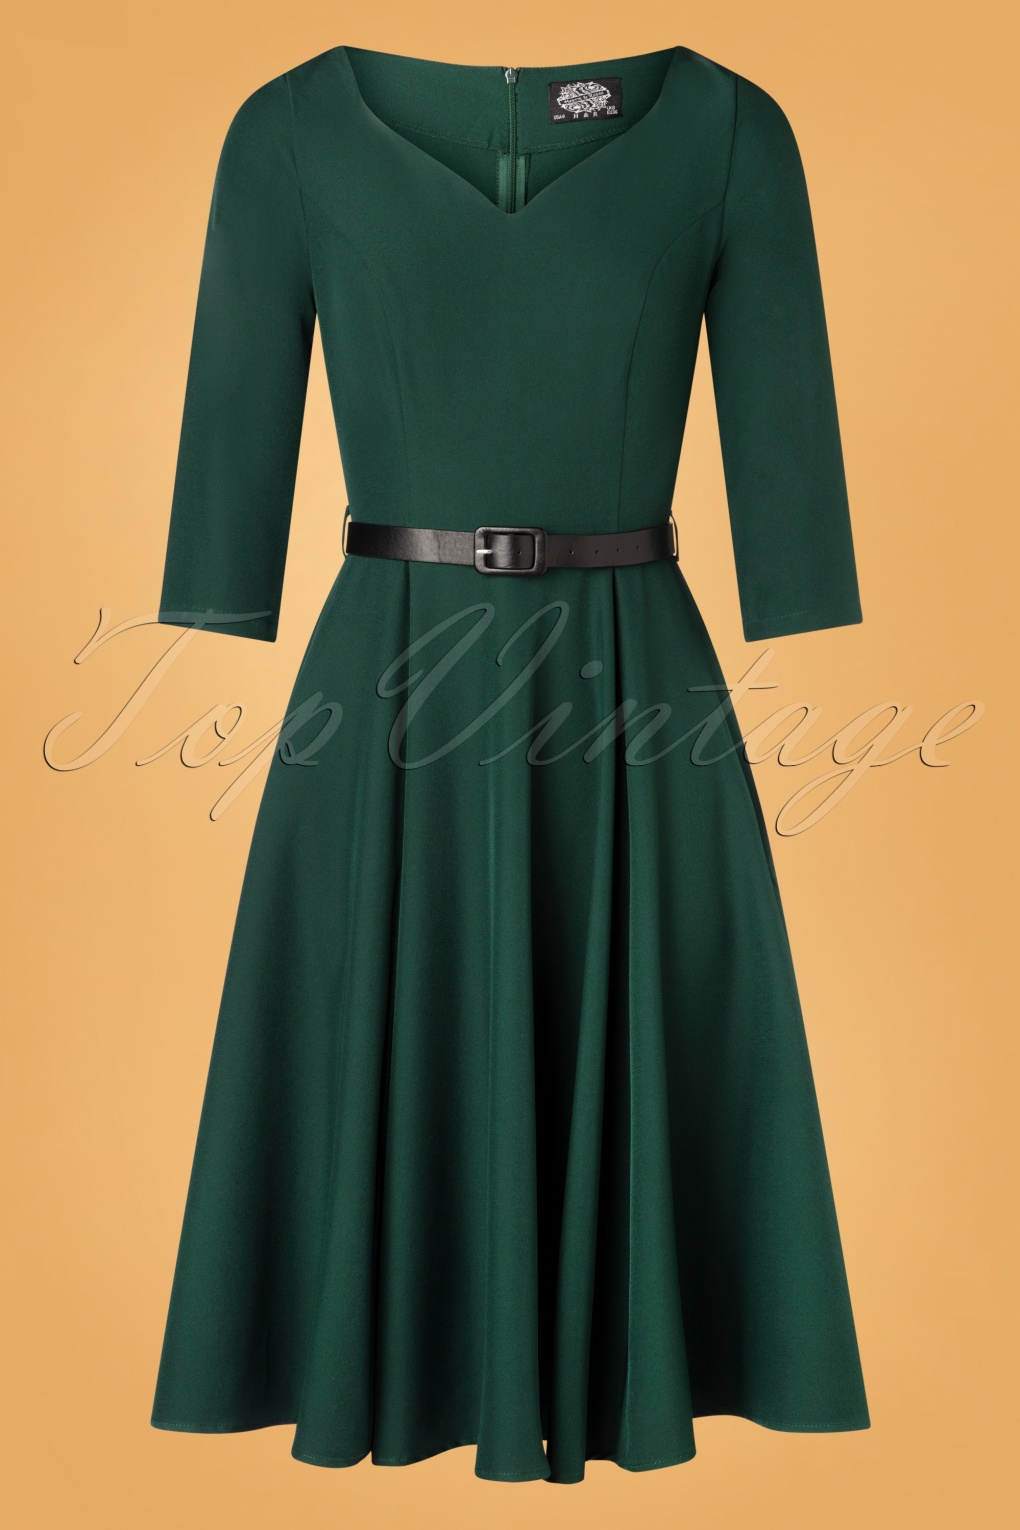 50s Elvie Swing Dress in Dark Green